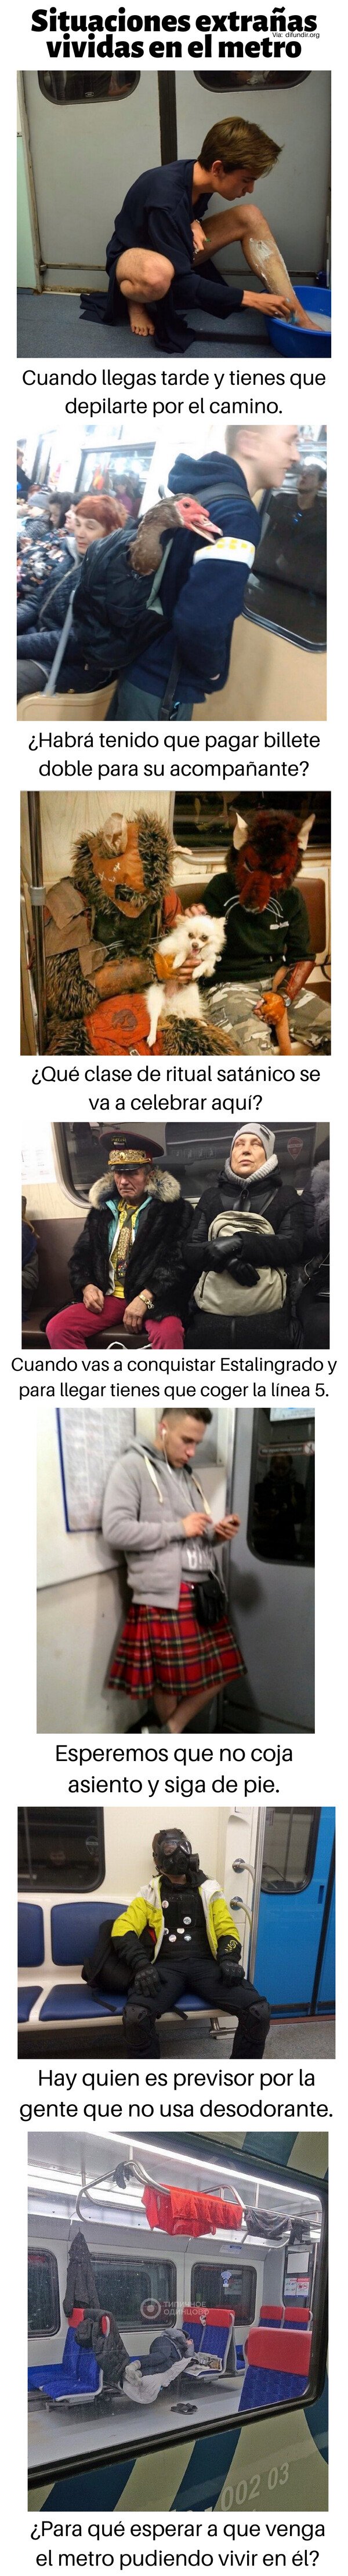 Meme_otros - Situaciones extrañas vividas en el metro